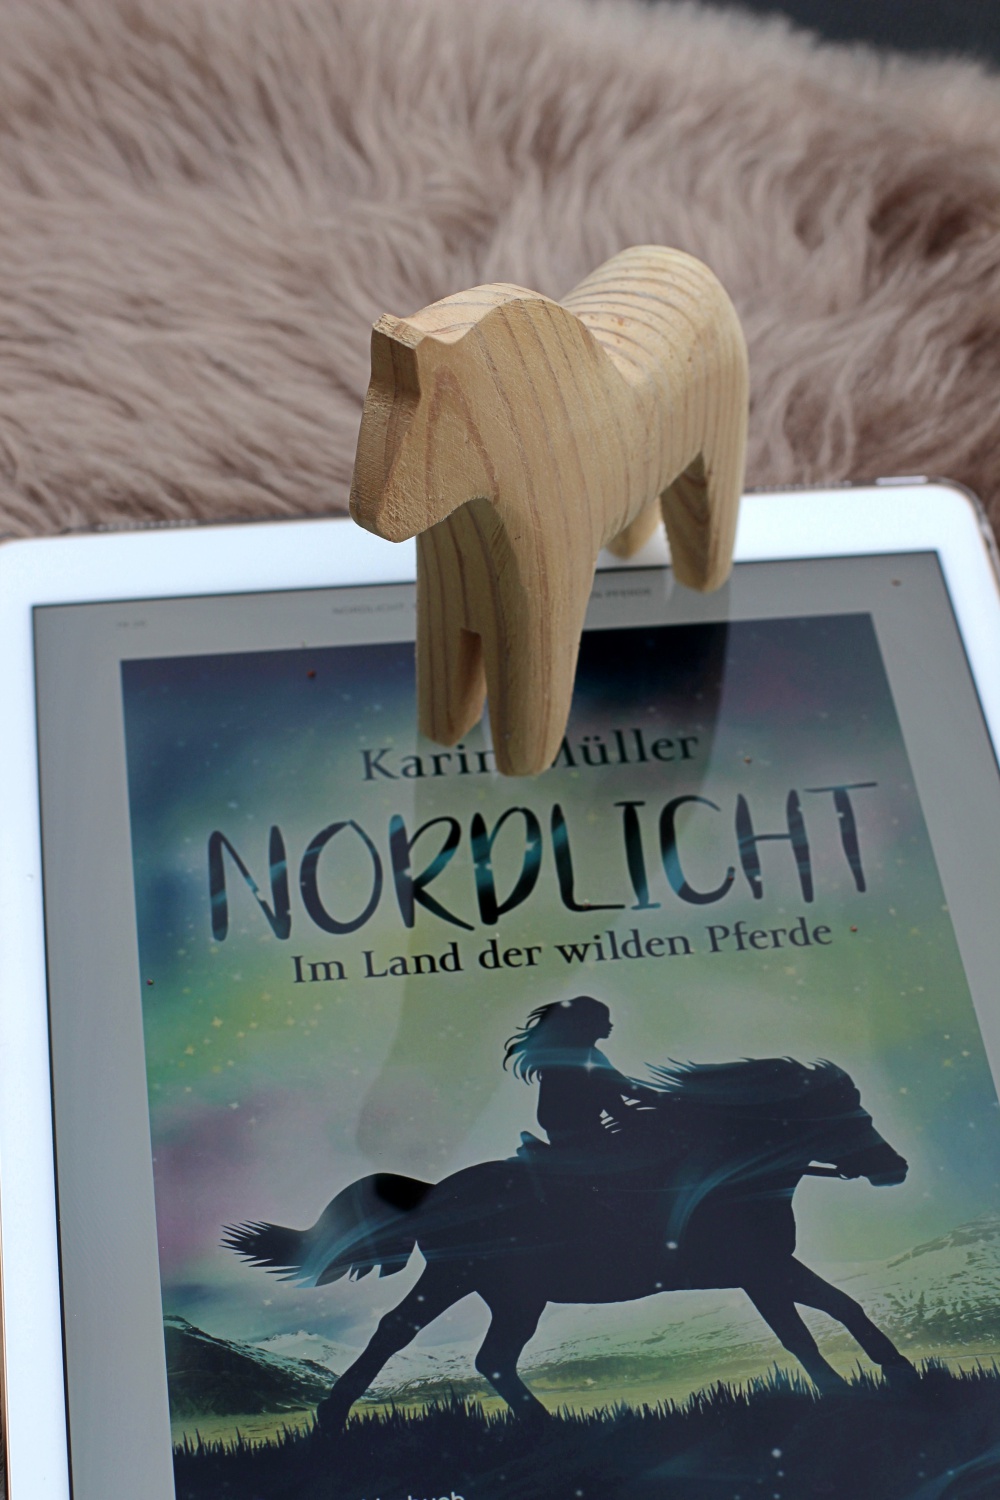 Nordlicht Im Lander wilden Pferde von Karin Müller